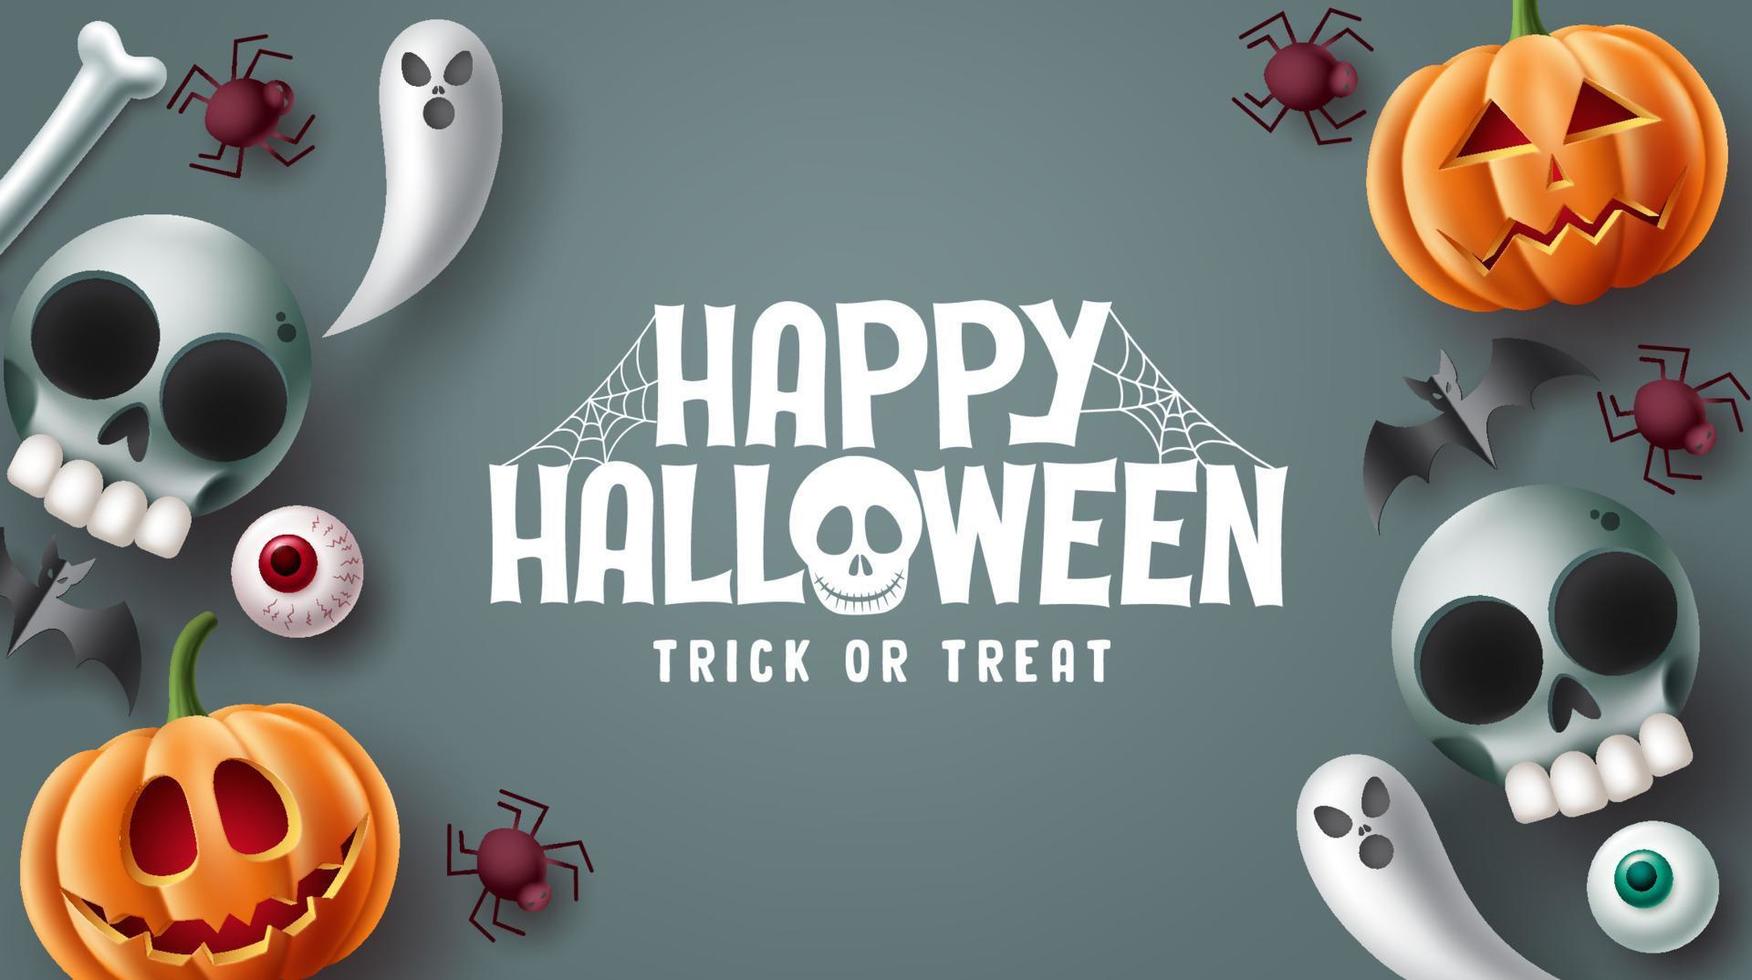 conception de vecteur de texte halloween heureux. Halloween trick or Treat sur fond d'espace gris avec des personnages de mascotte effrayants, effrayants, effrayants et mignons. illustration vectorielle.